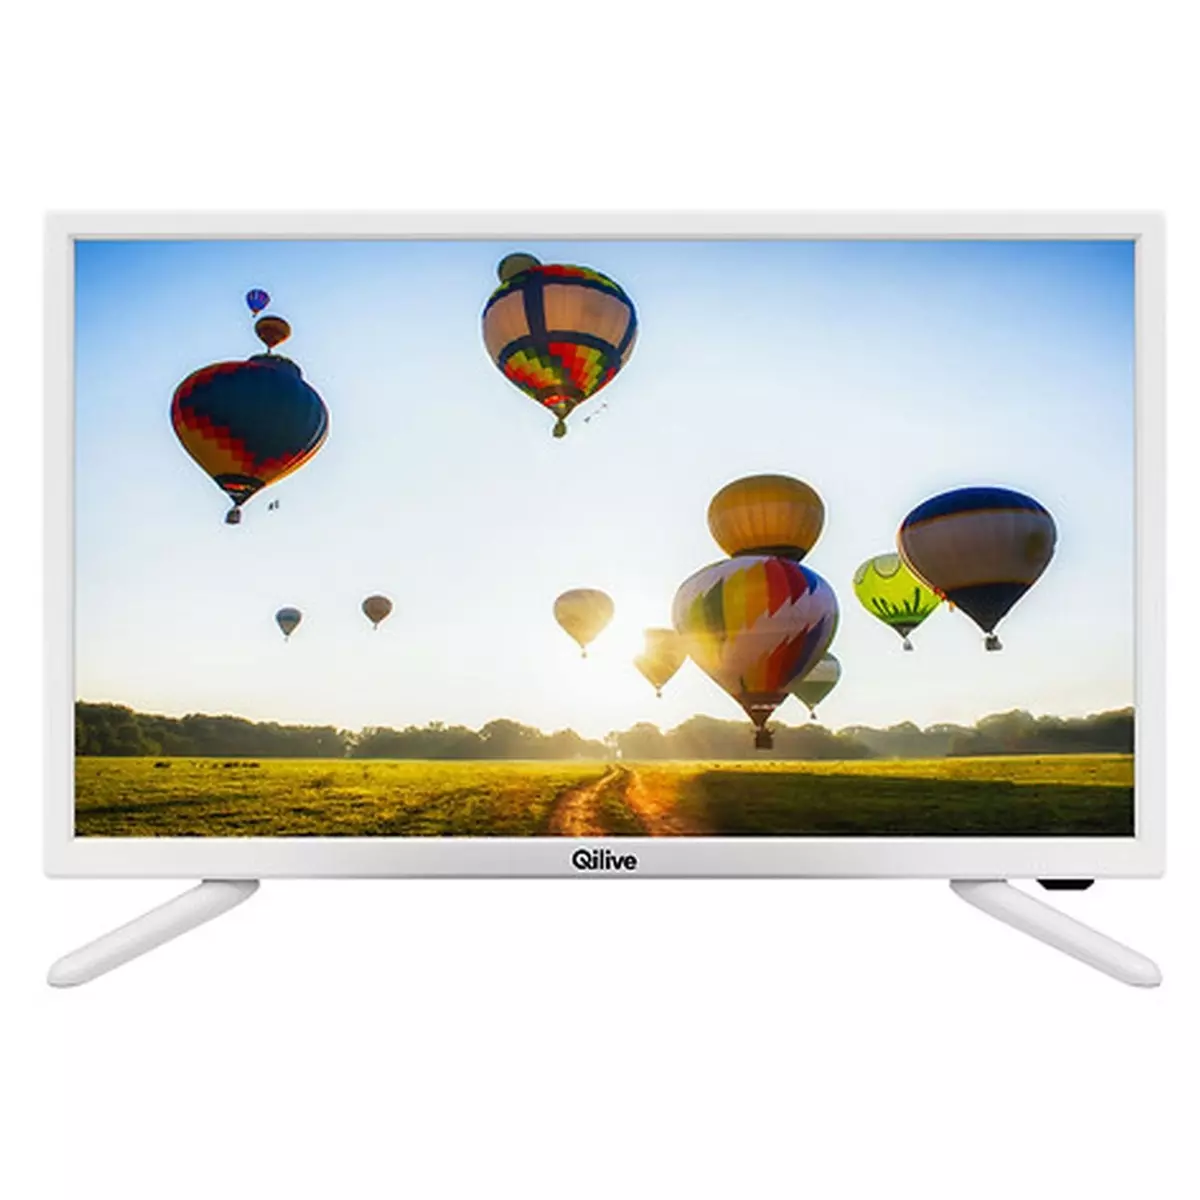 QILIVE Q24-984W TV LED HD 60 cm